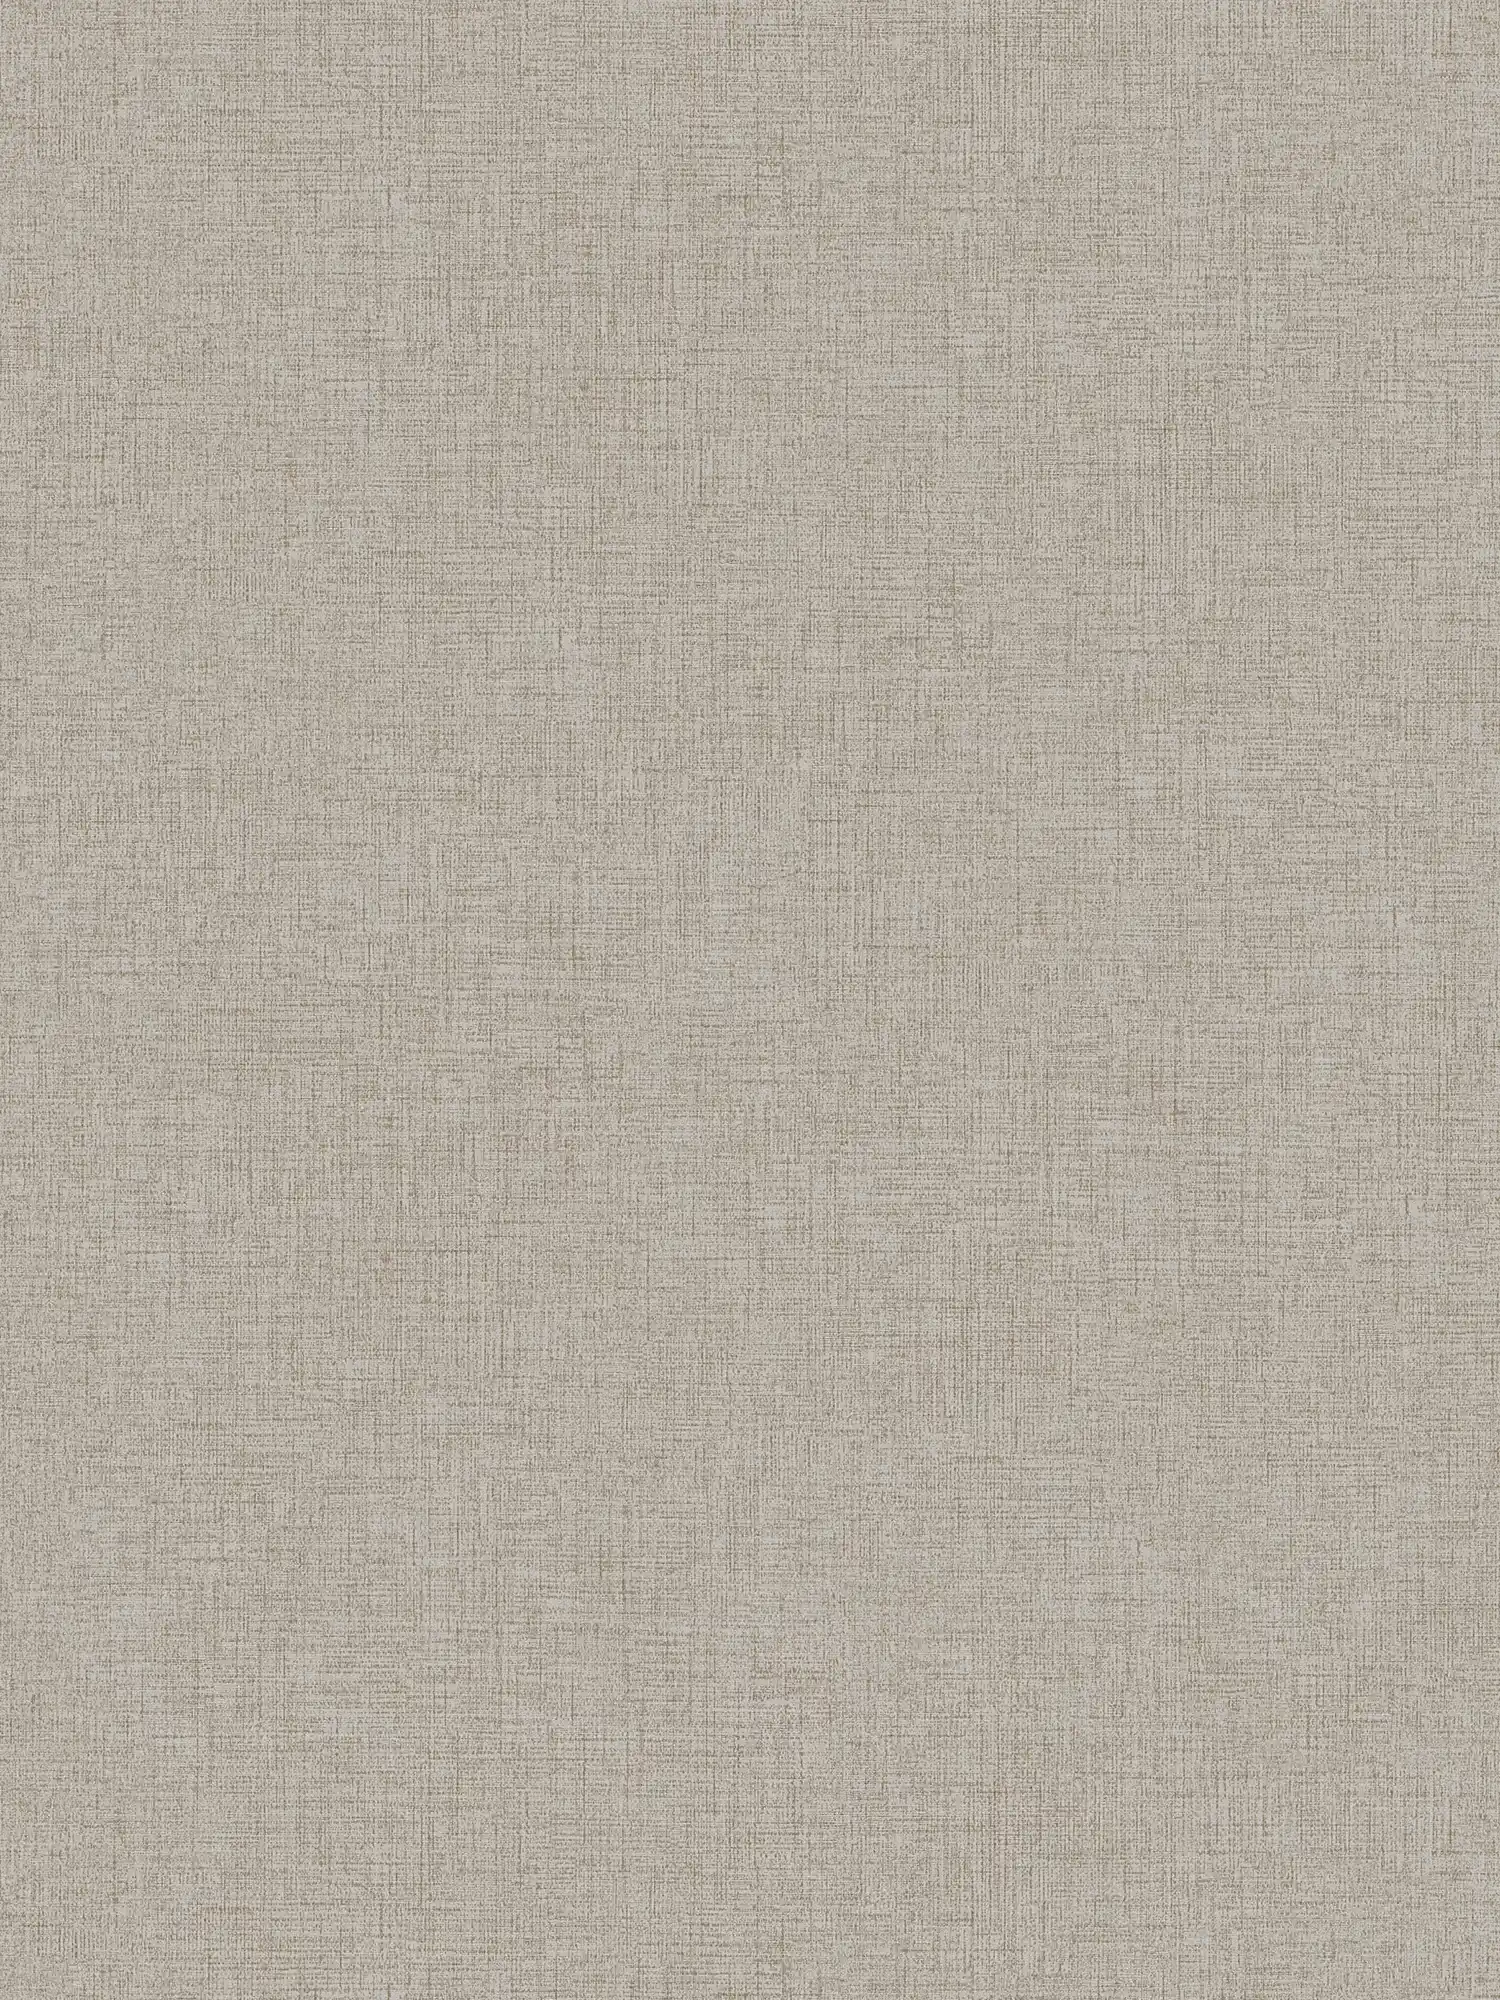 papier peint imitation lin uni, neutre - beige
